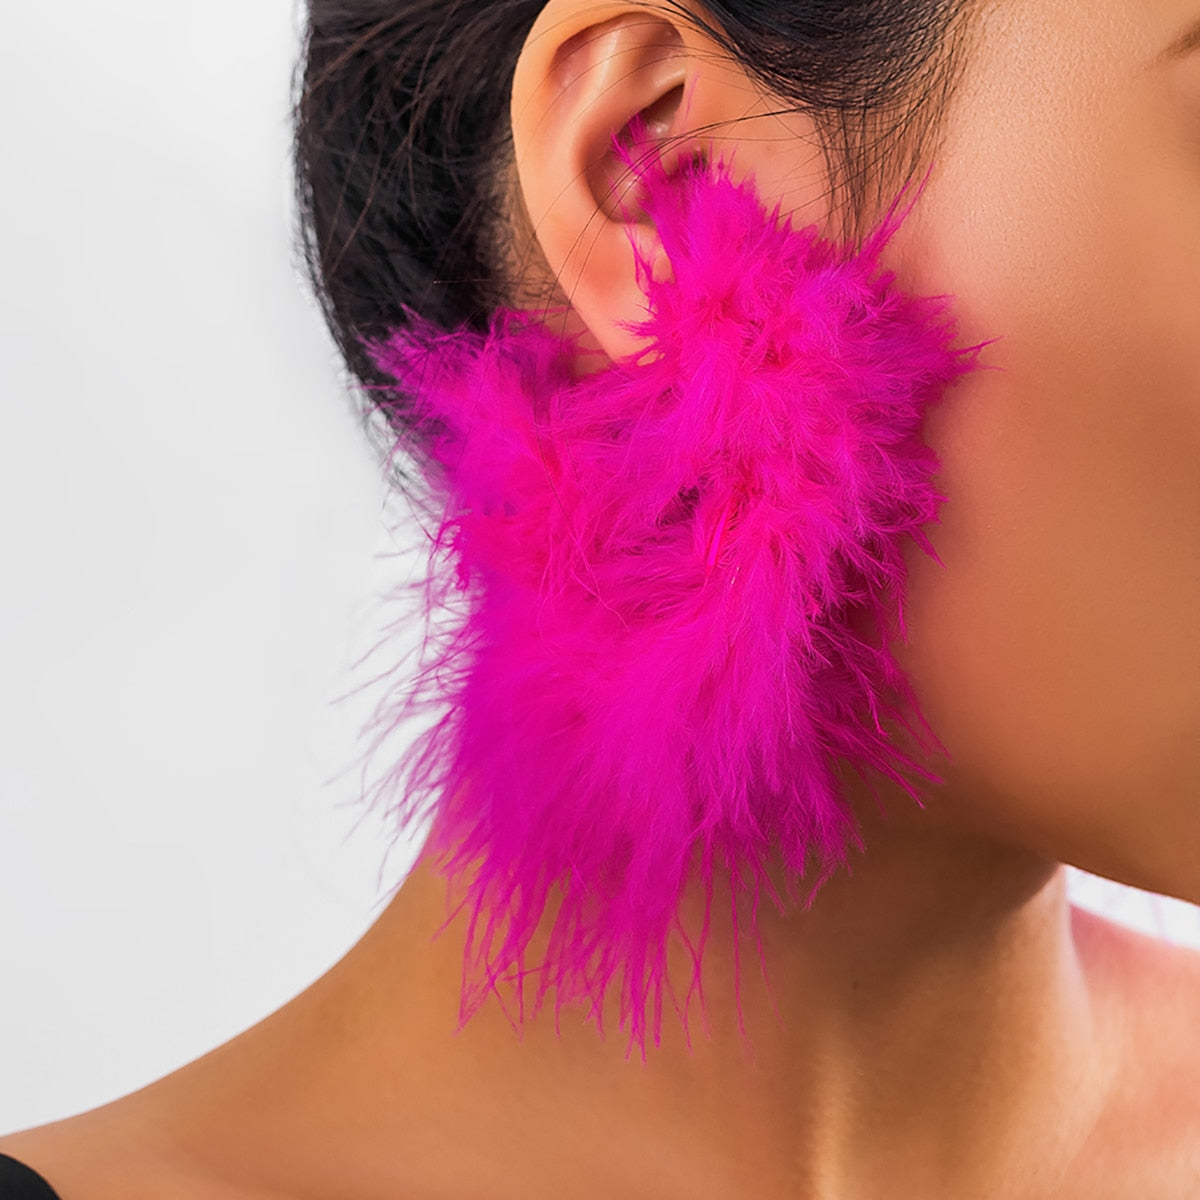 TEEK - Colorful Feather Hoop Earrings  theteekdotcom rose red  